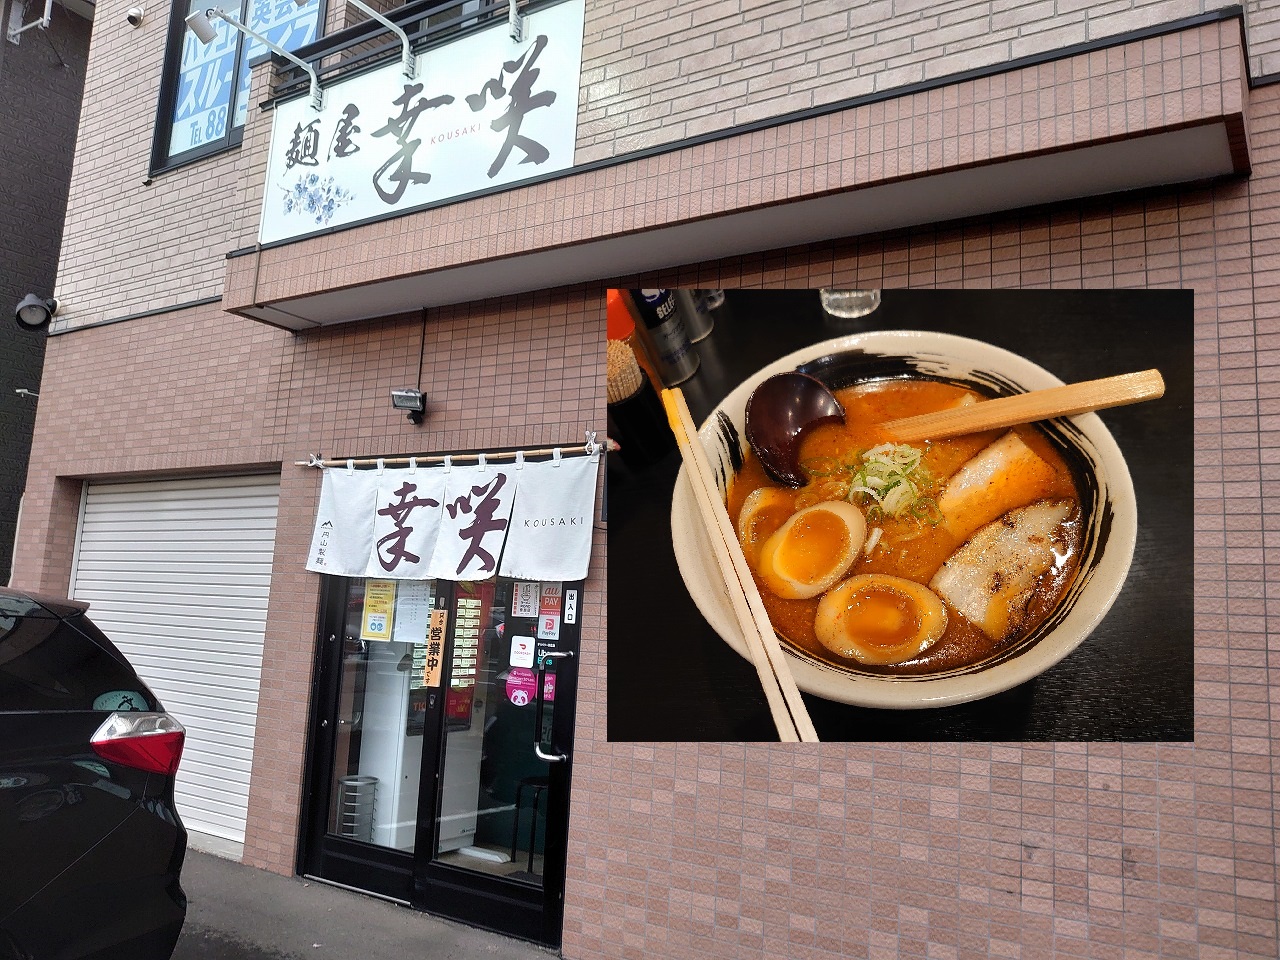 札幌で昼食をとってみた~その18~麺屋 幸咲